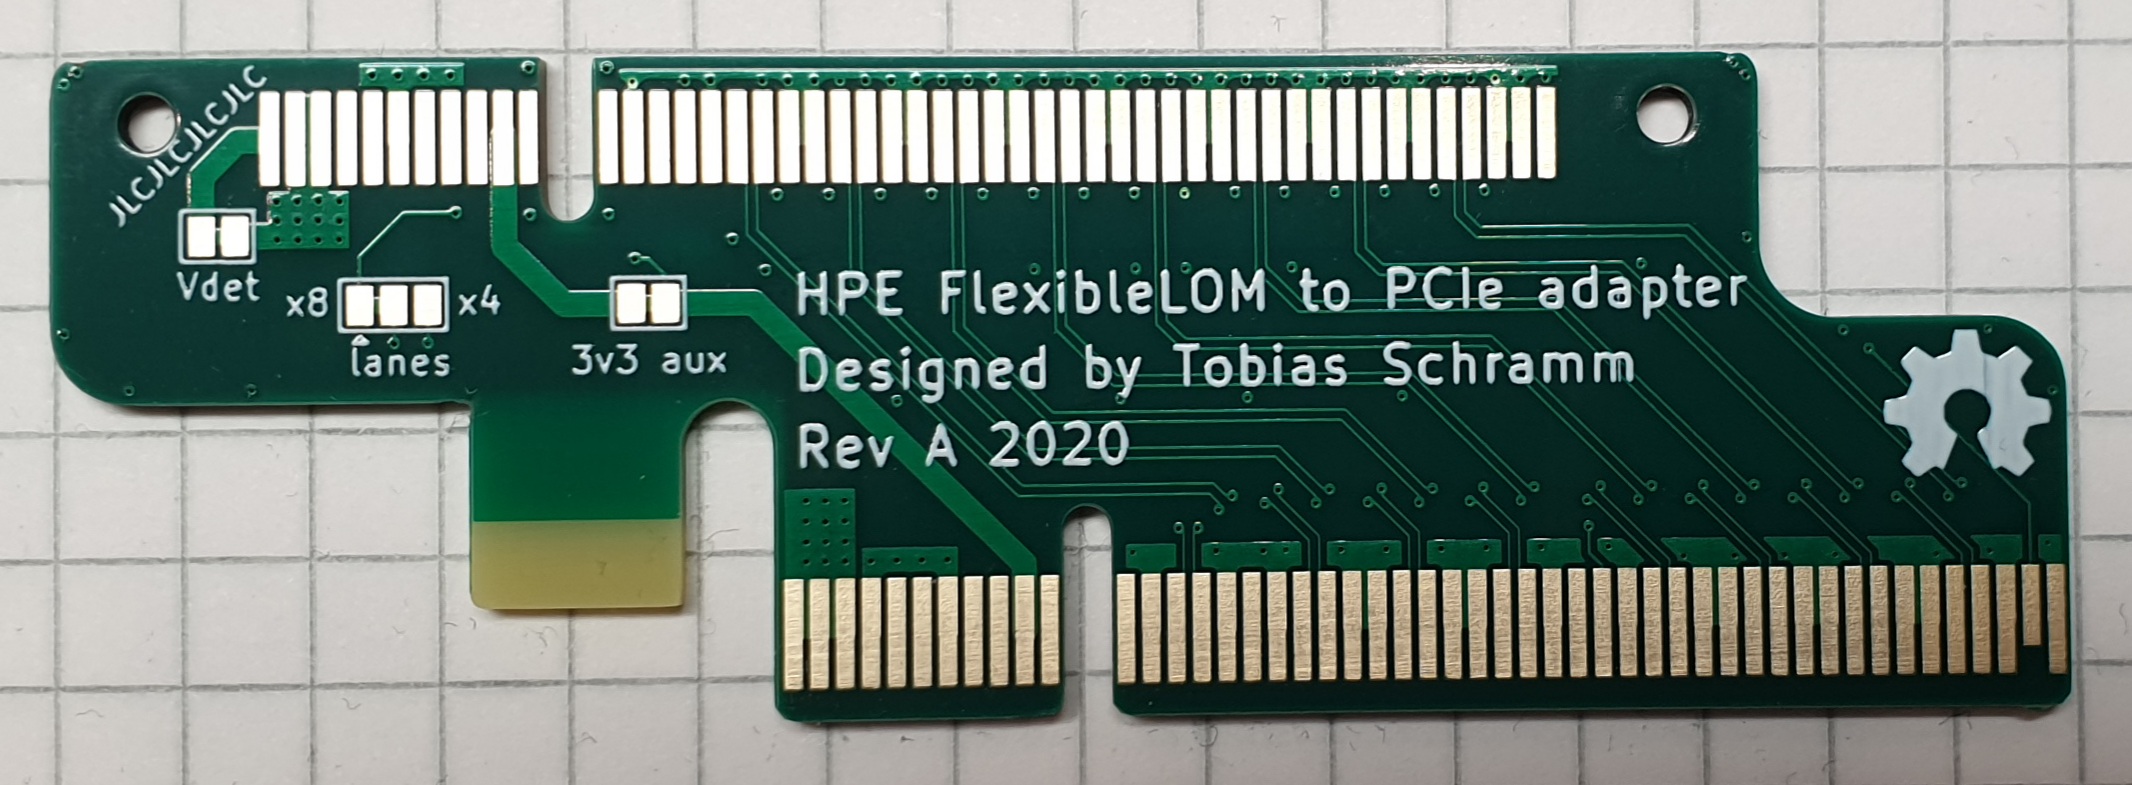 HPE FlexibleLOM PCIEx8 adapter DIY kit